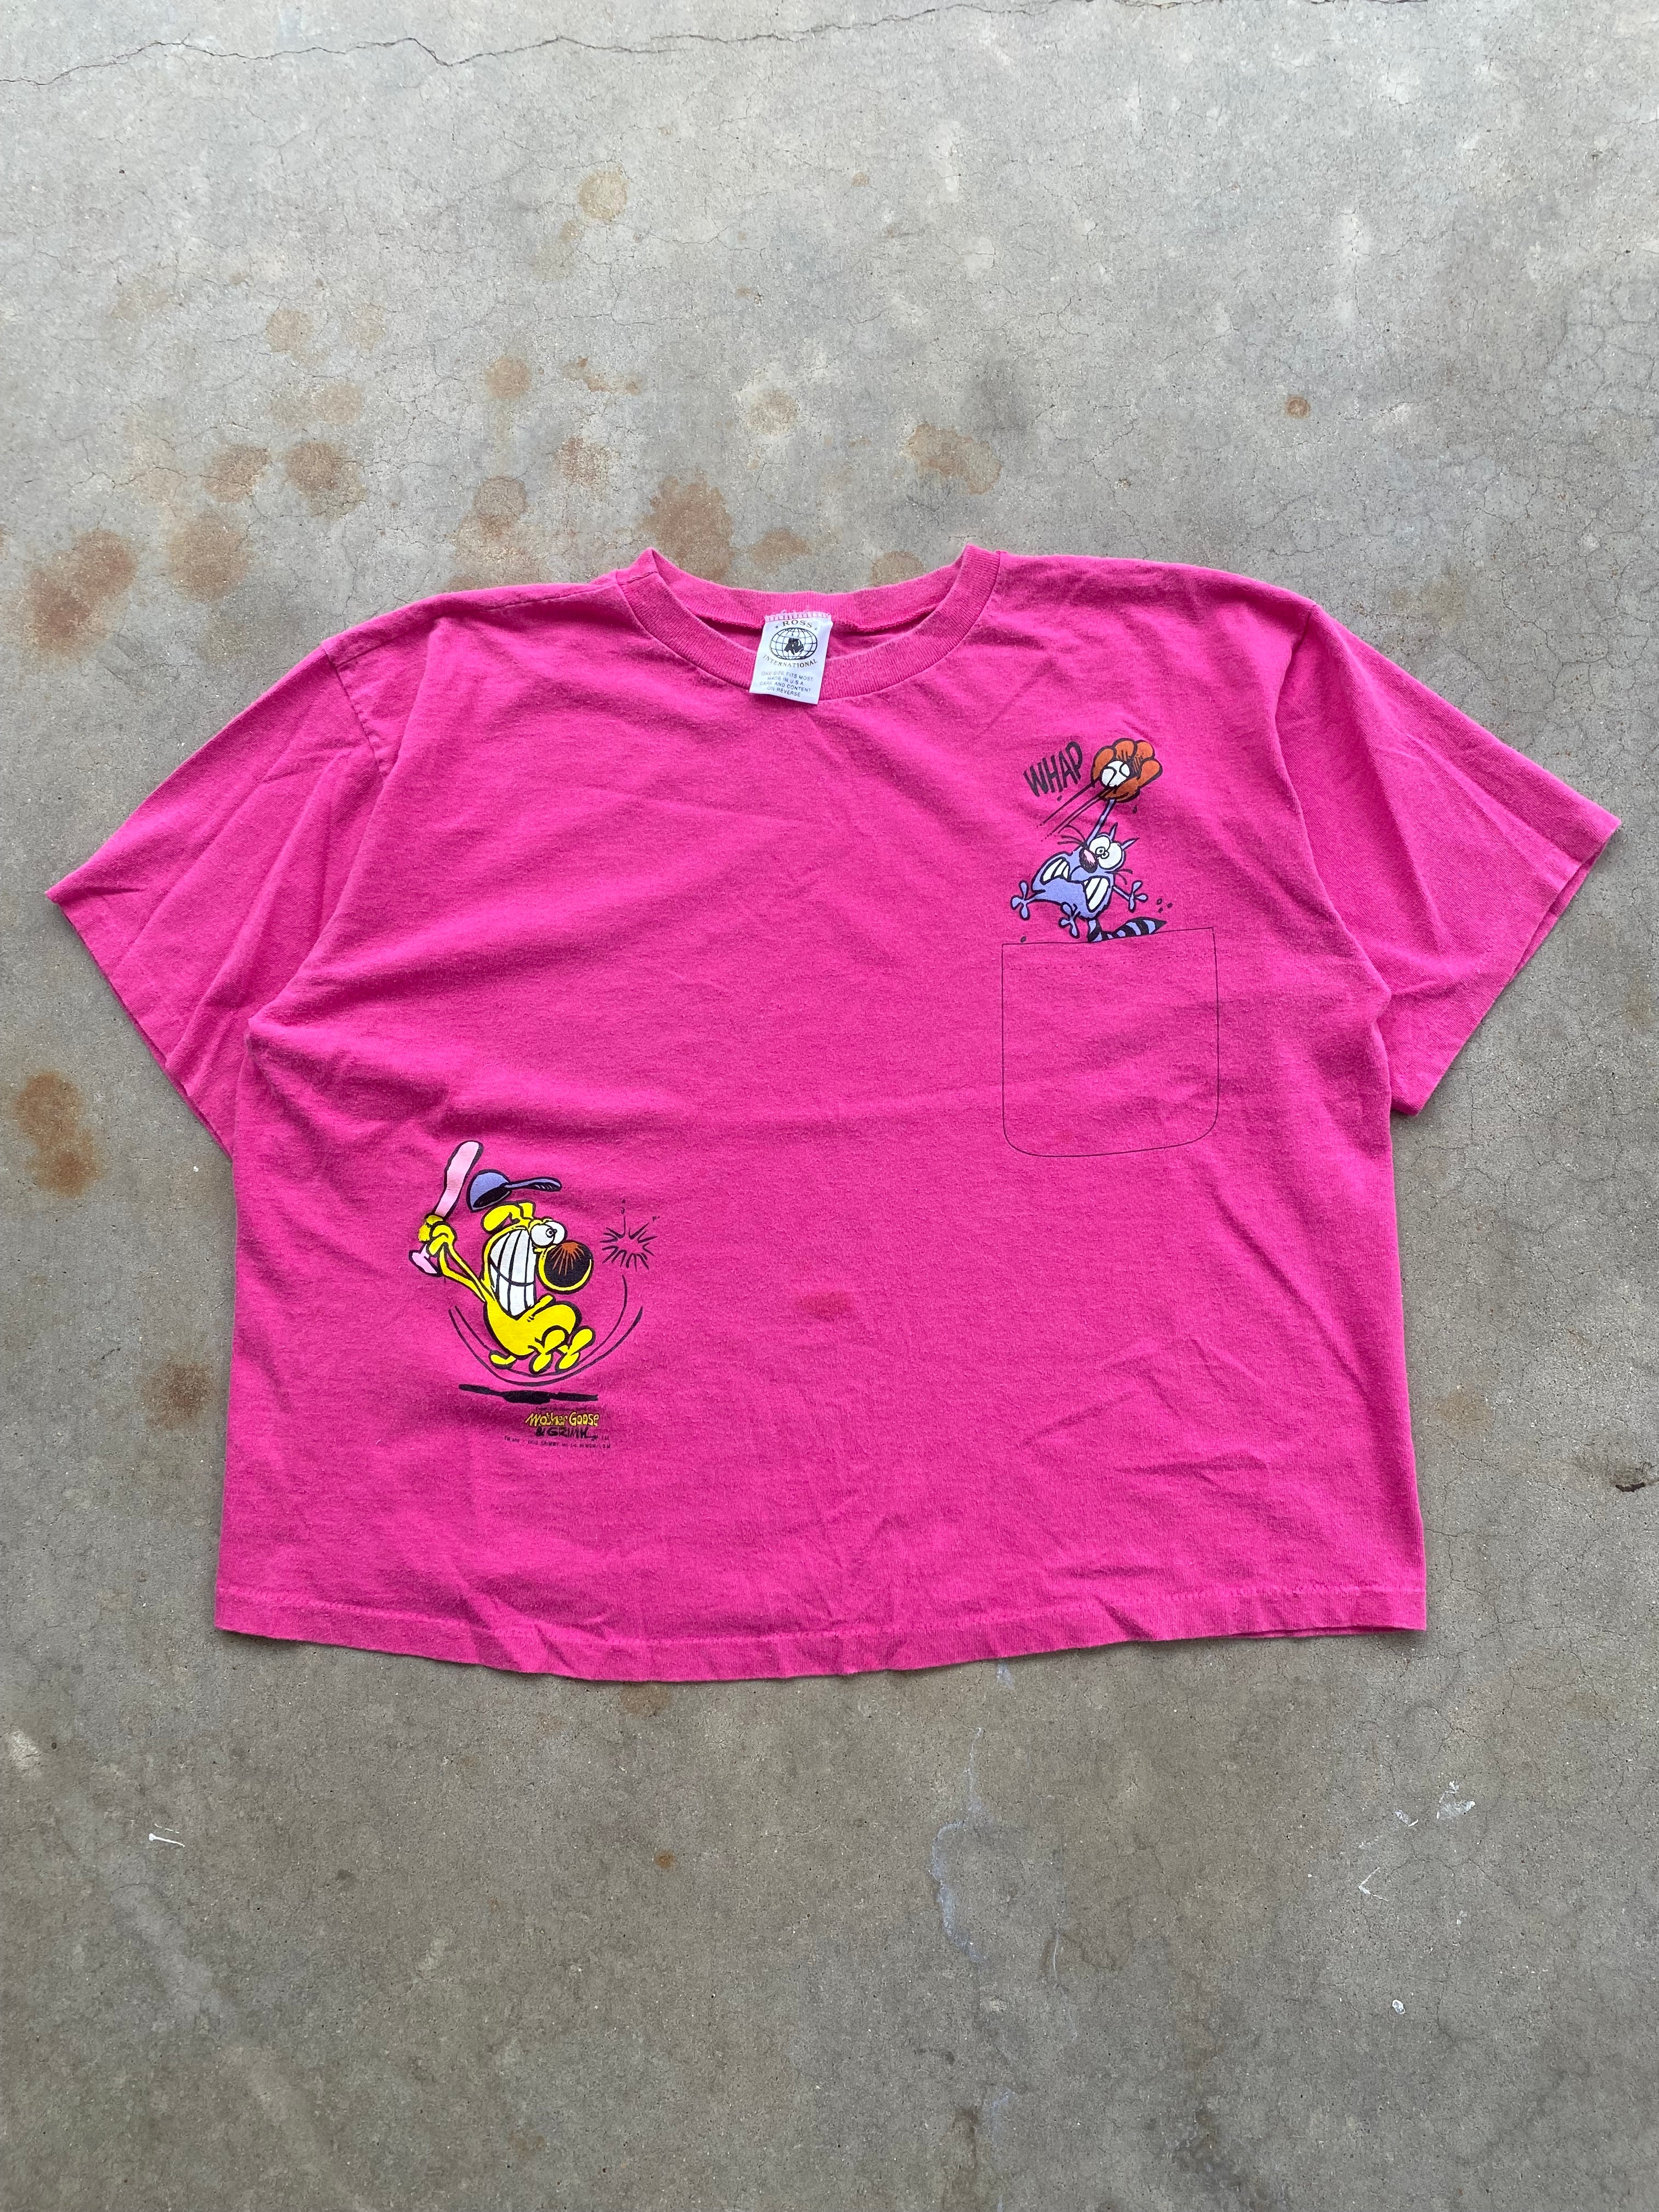 1992 Mother Goose & Grimm T-Shirt (M/L)